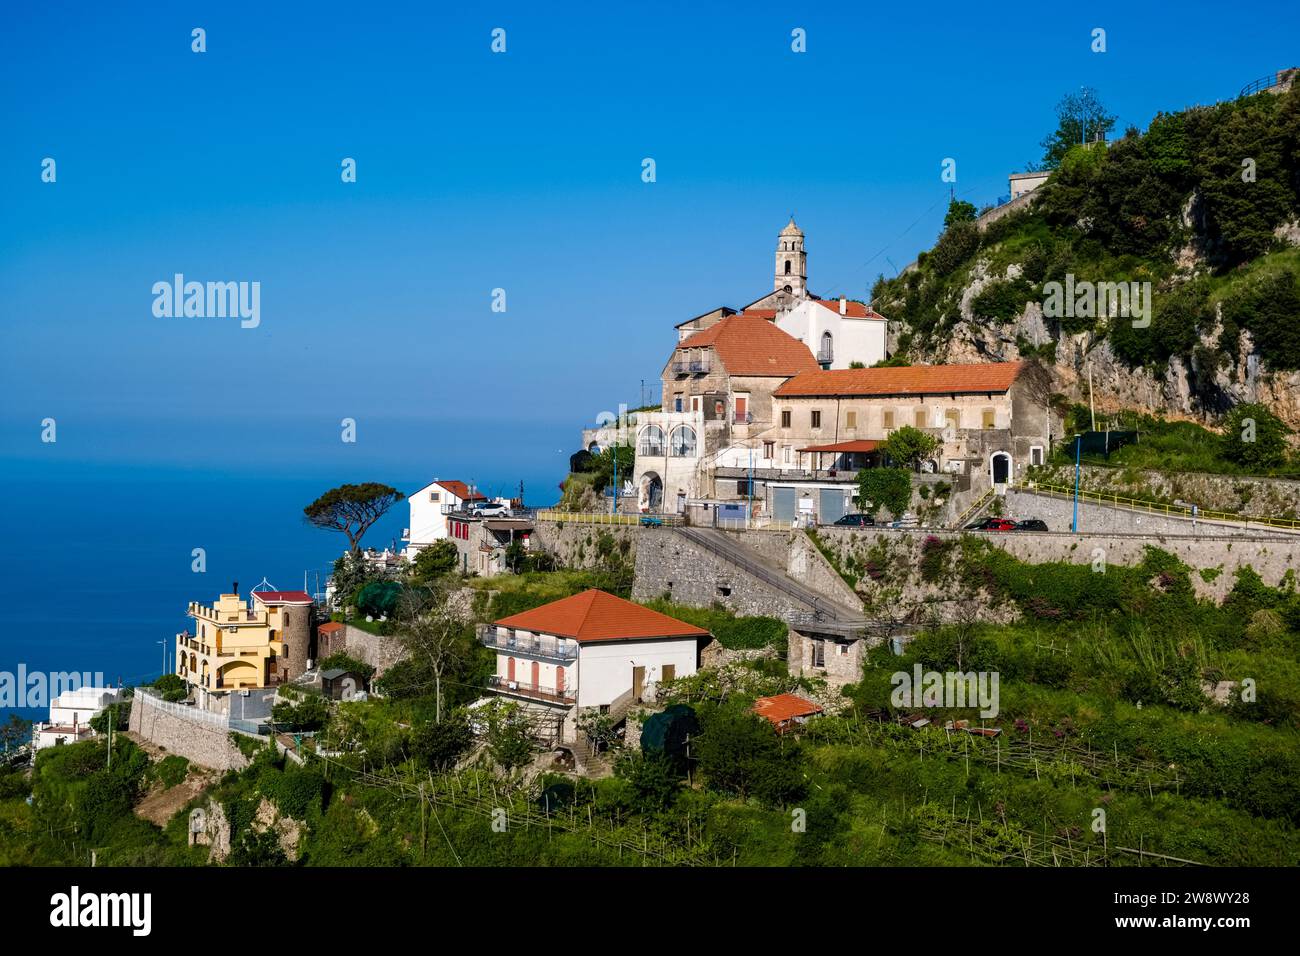 Häuser und Kirche des kleinen Dorfes San Giacomo in Furore, auf einem Hügel mit Blick auf das Mittelmeer. Stockfoto